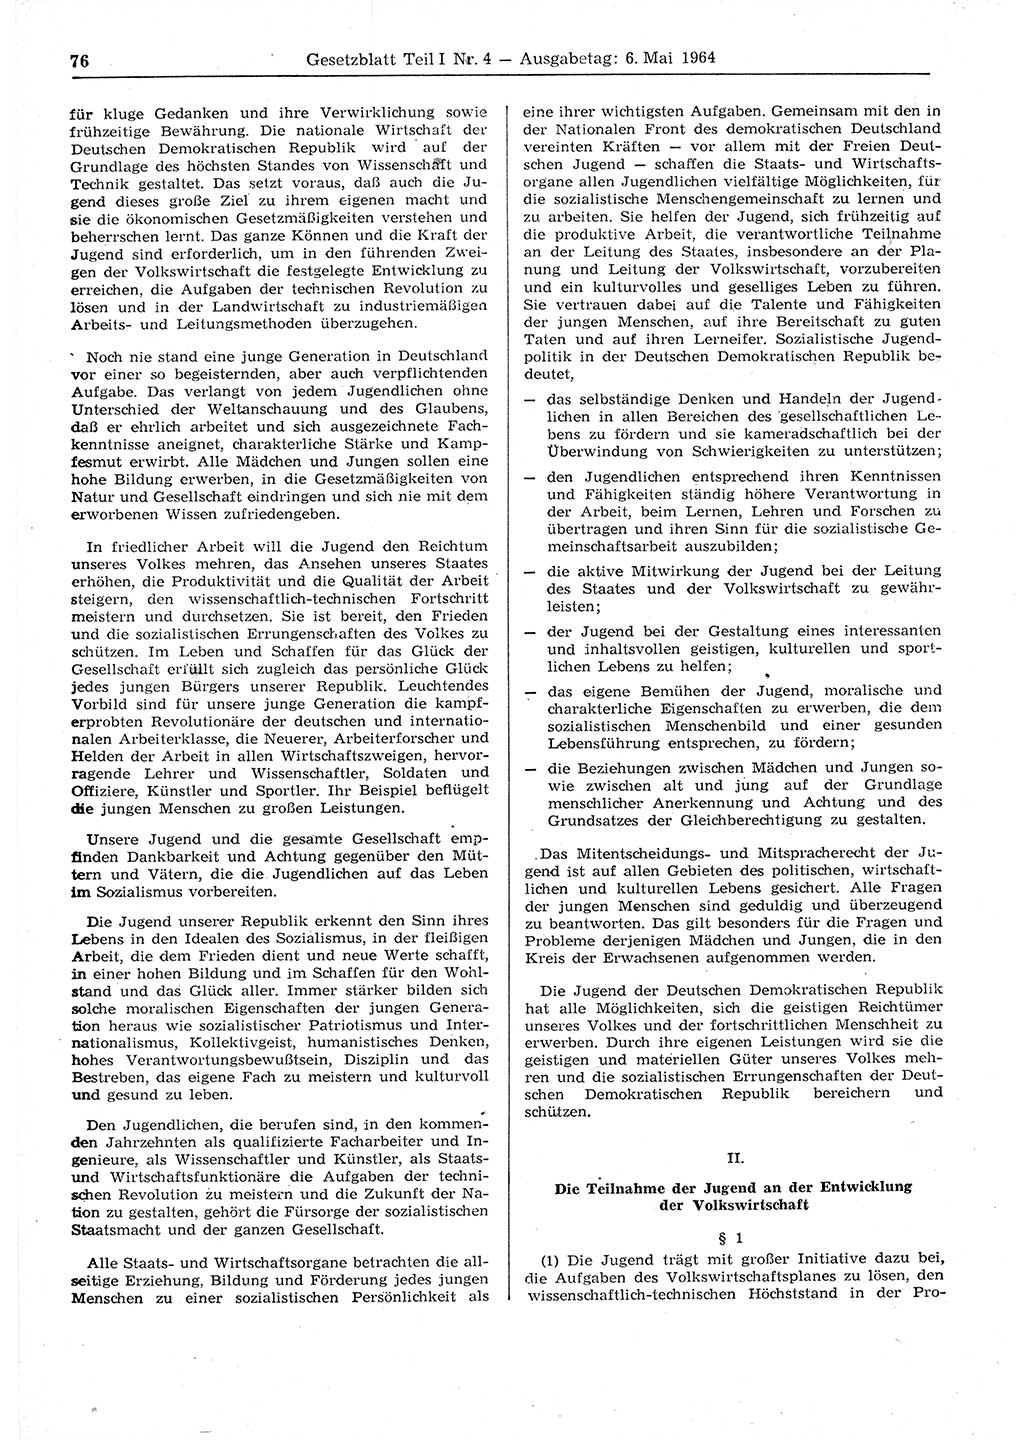 Gesetzblatt (GBl.) der Deutschen Demokratischen Republik (DDR) Teil Ⅰ 1964, Seite 76 (GBl. DDR Ⅰ 1964, S. 76)